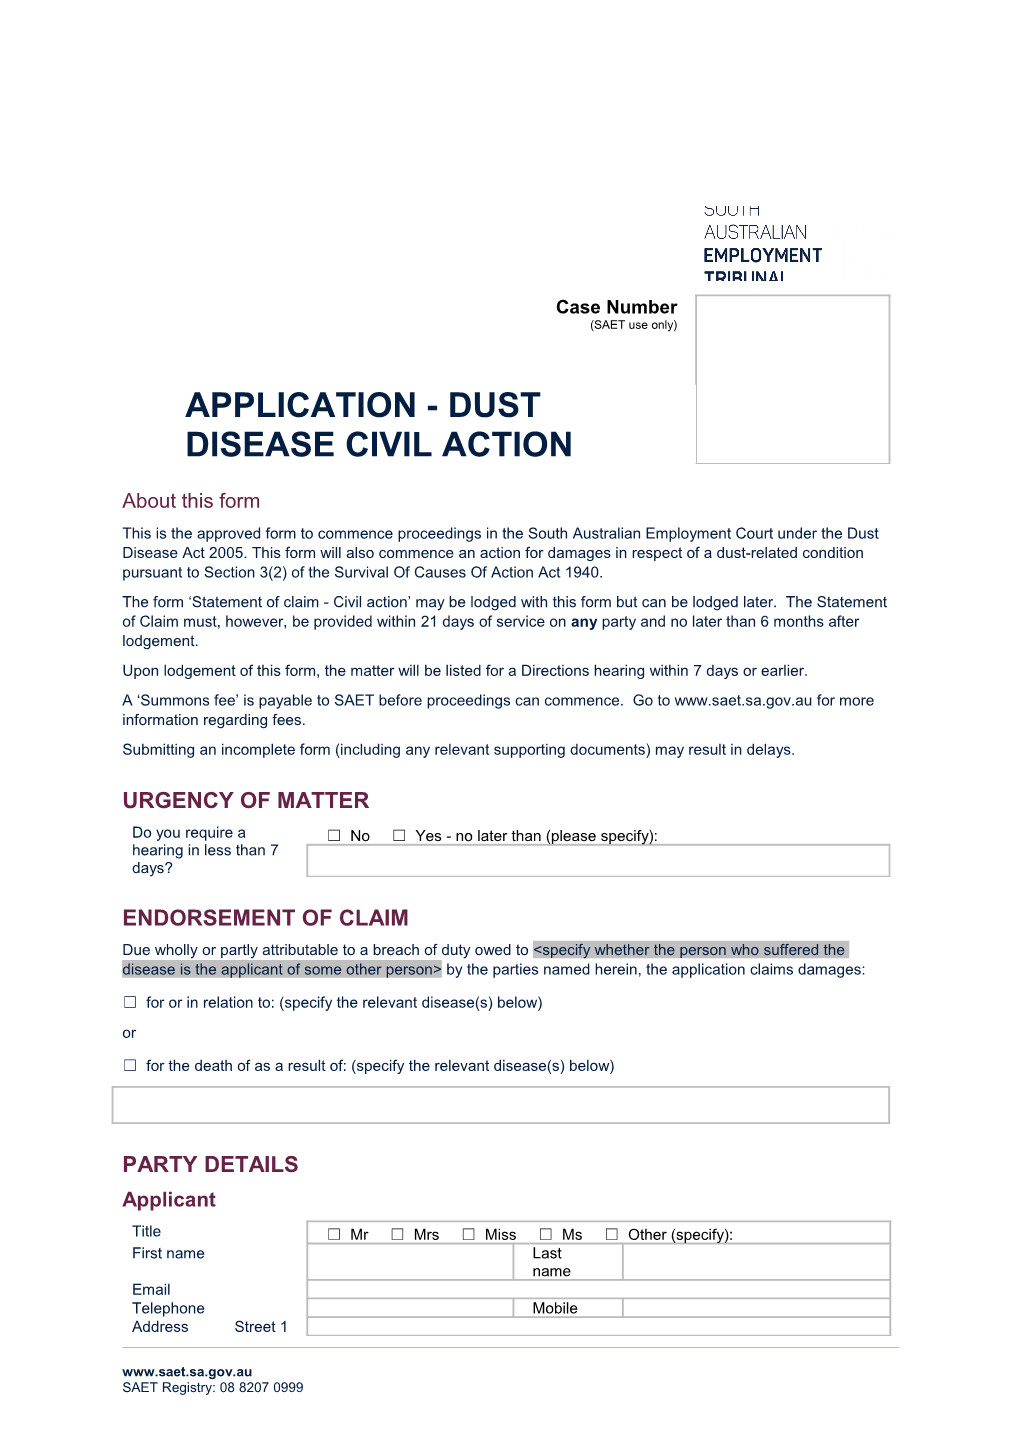 Application - Dust Disease Civil Action